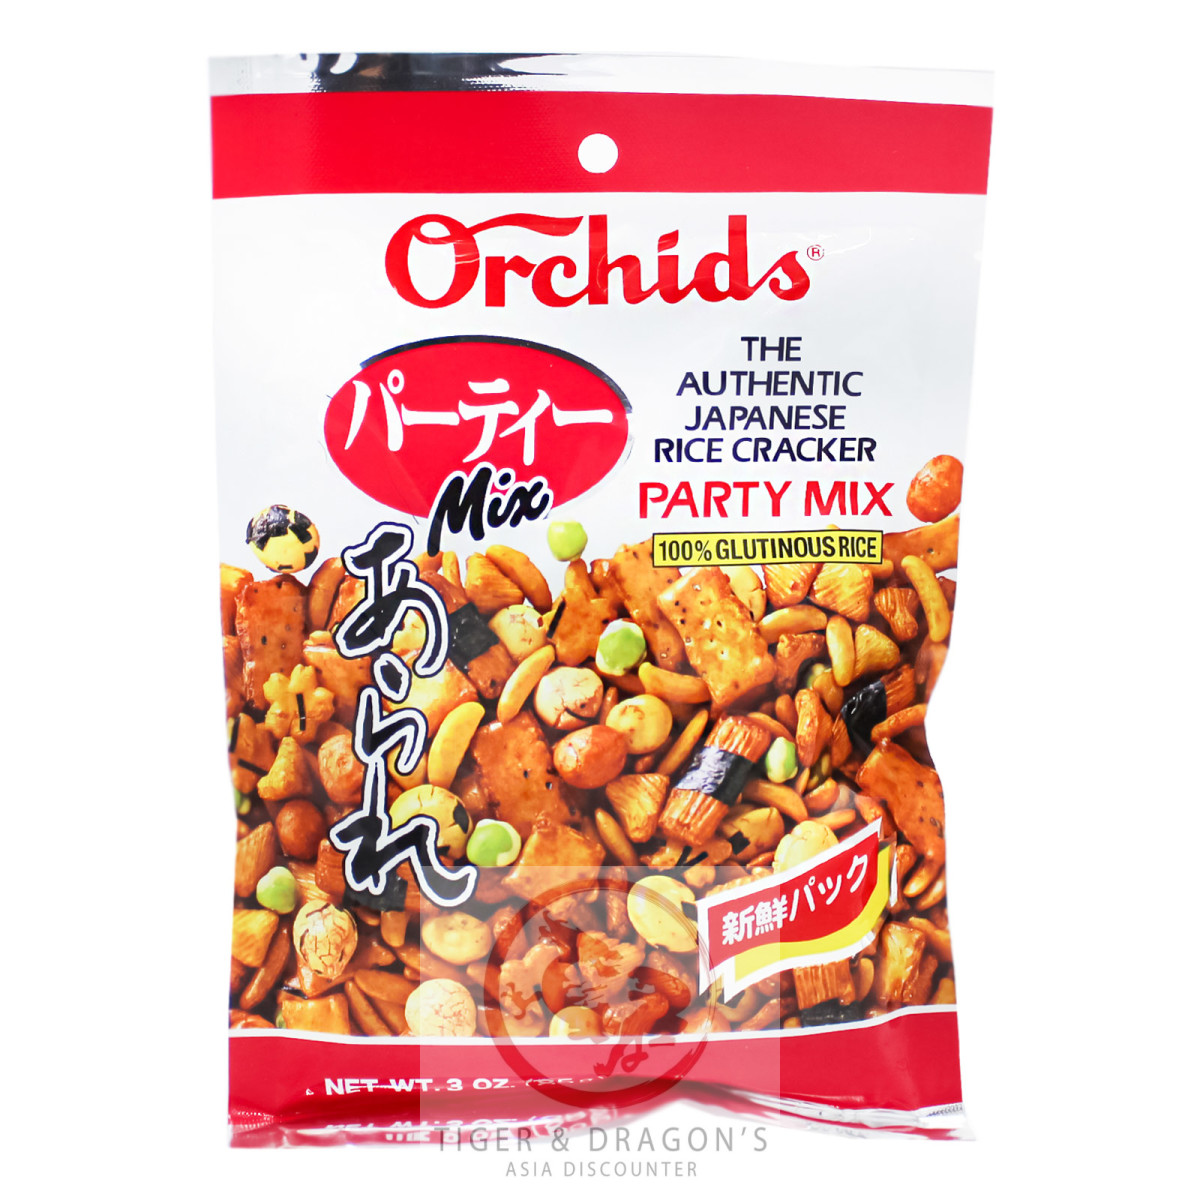 Orchids Japanisches Reisgebäck Mix Arare 85g